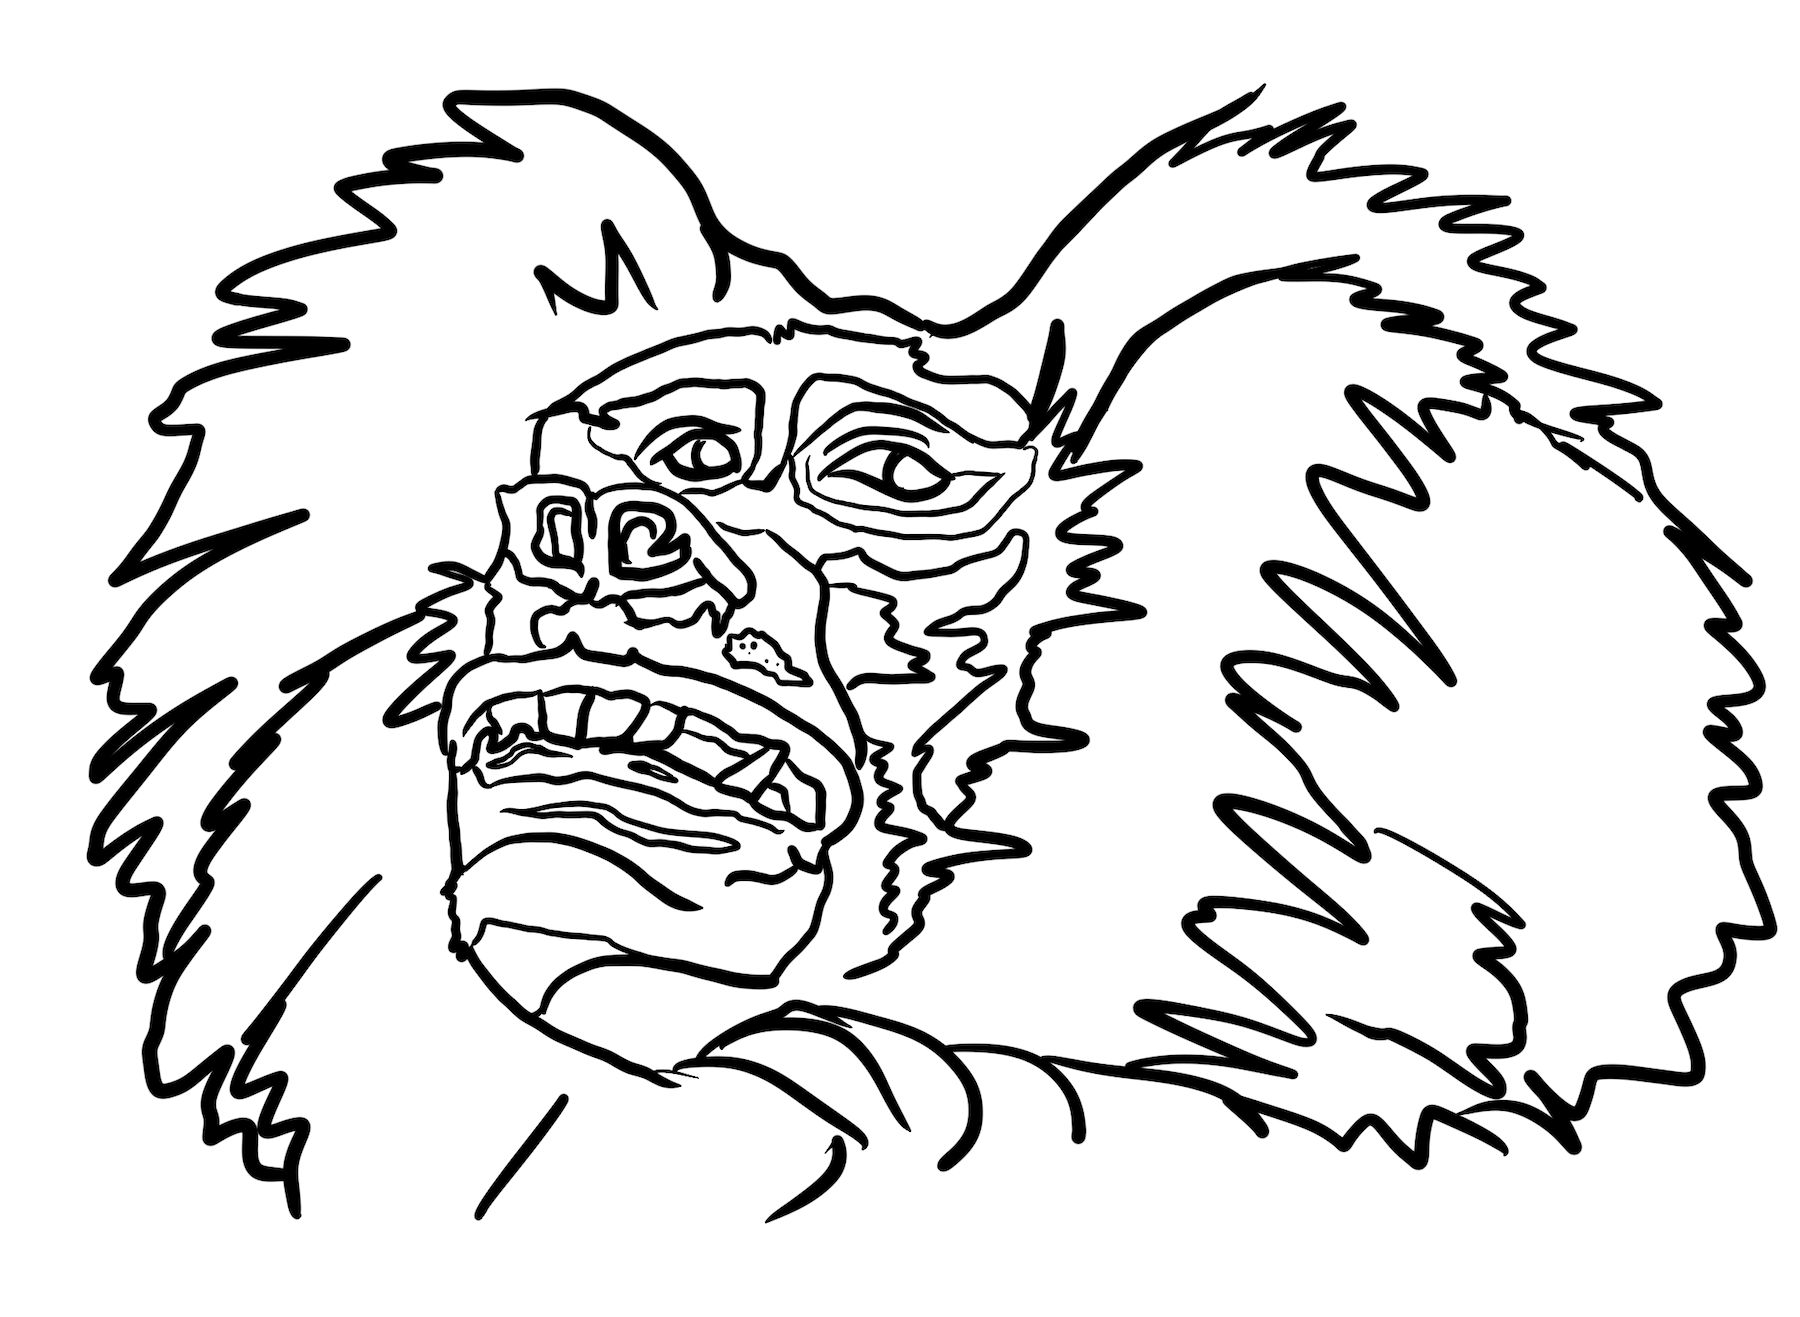 Ugly monkey